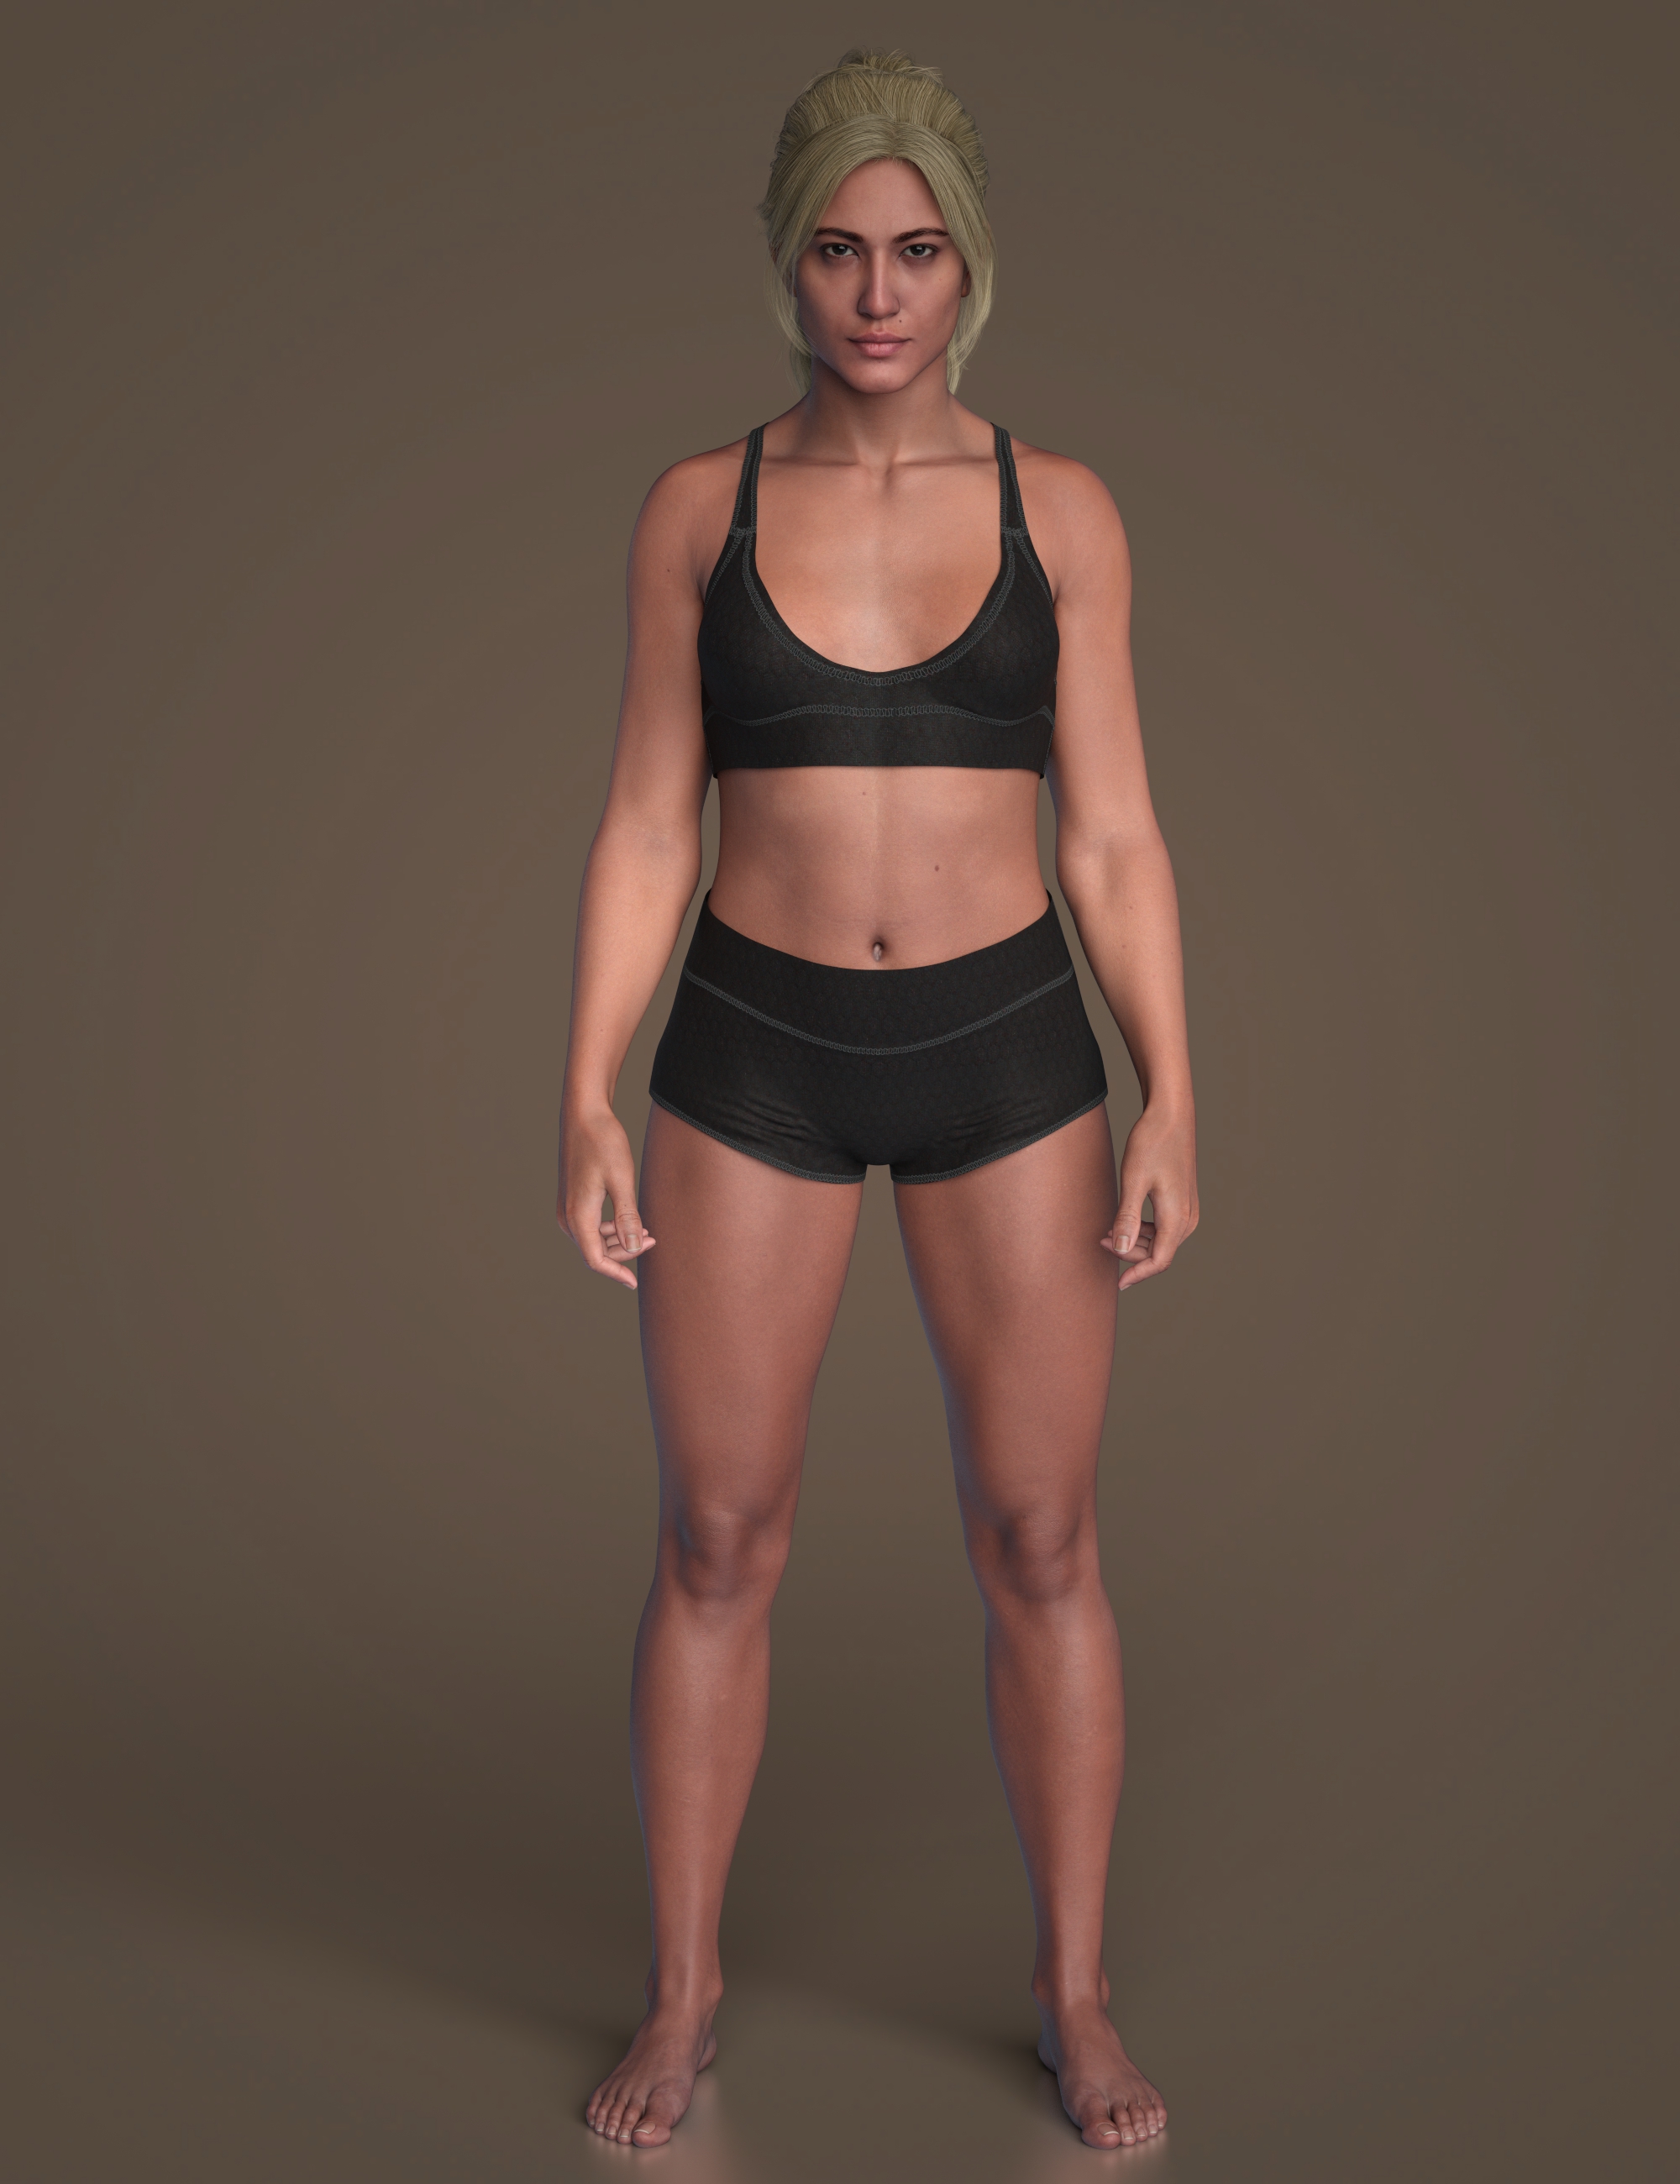 Cheyenne 9 Muscular Shape Add-On by: , 3D Models by Daz 3D